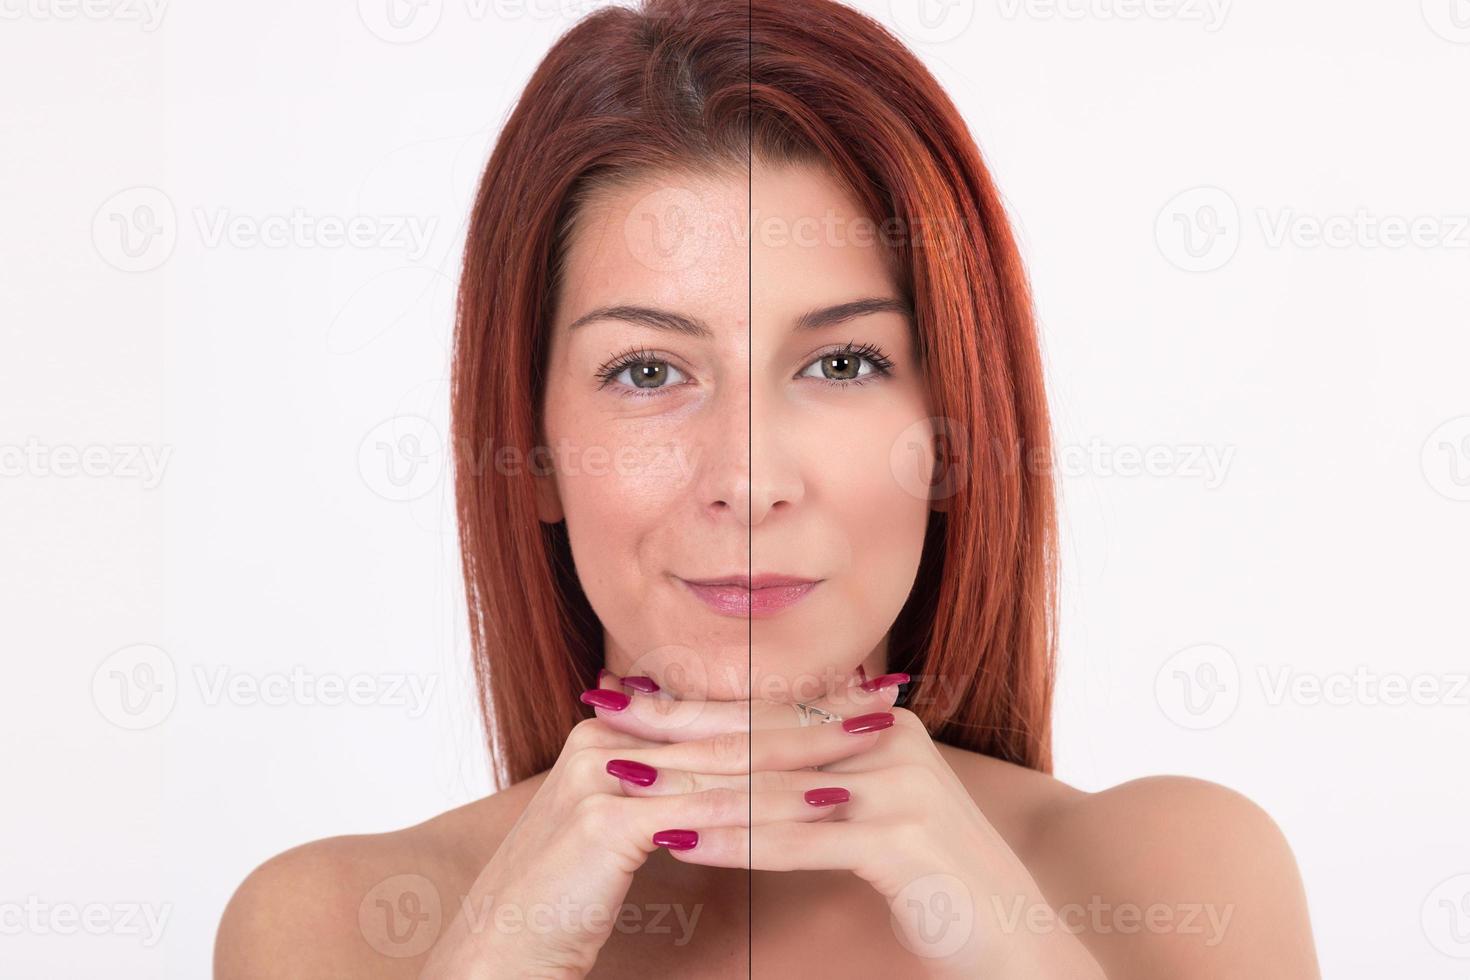 antes e depois do tratamento de beleza. foto